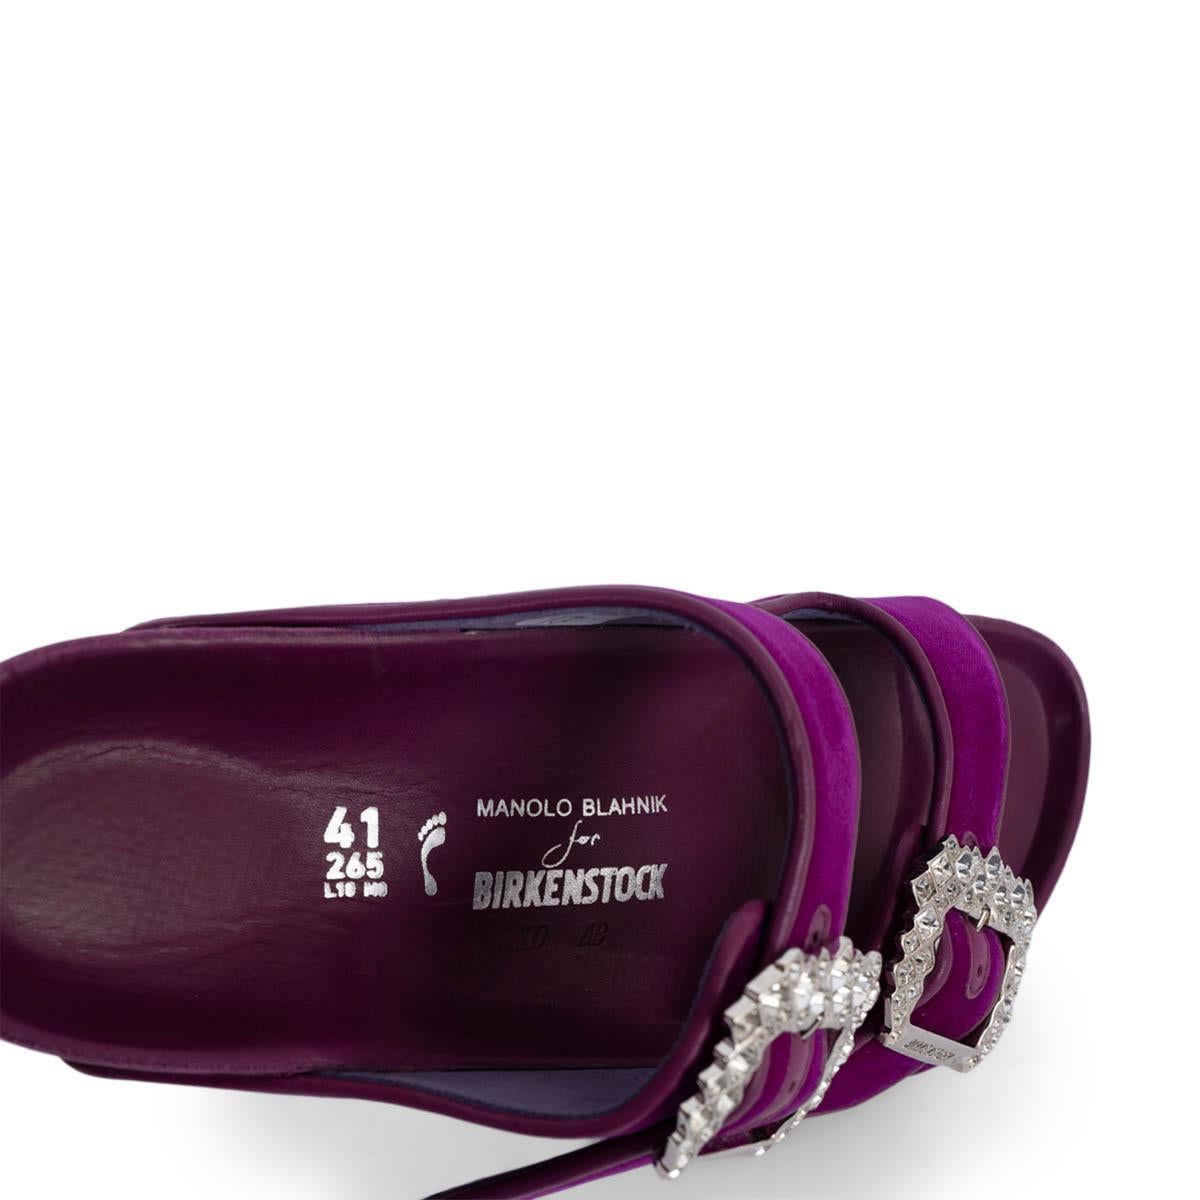 MANOLO BLAHNIK x BIRKENSTOCK fuchsia velvet 2020 EMBELLISHED Sandals Shoes 41 4